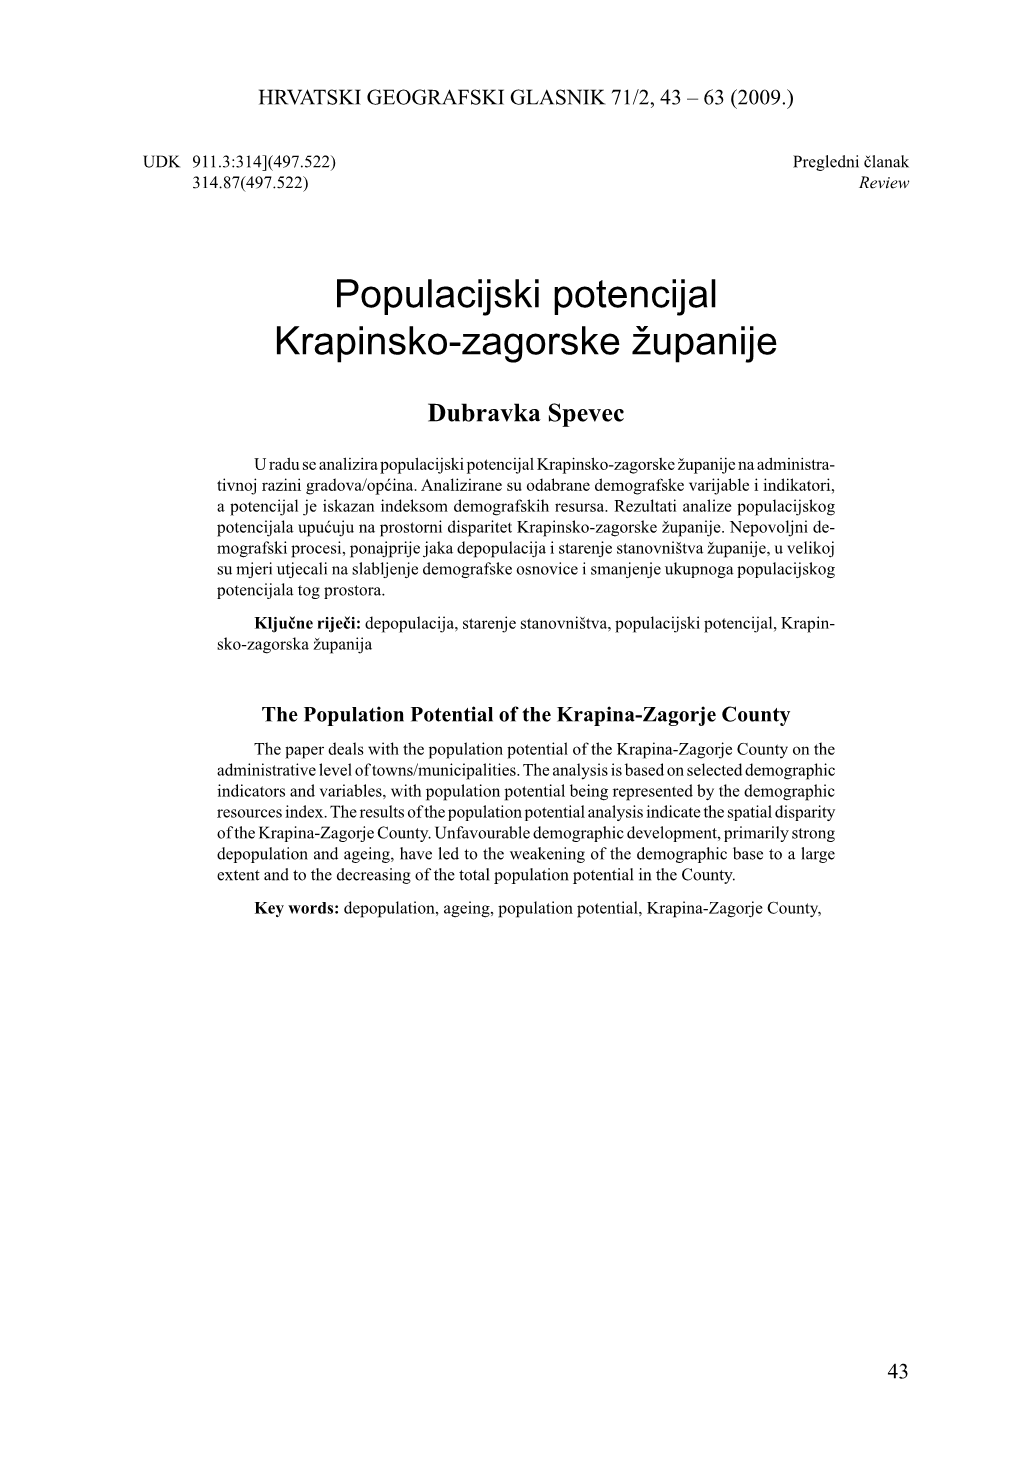 Populacijski Potencijal Krapinsko-Zagorske Županije